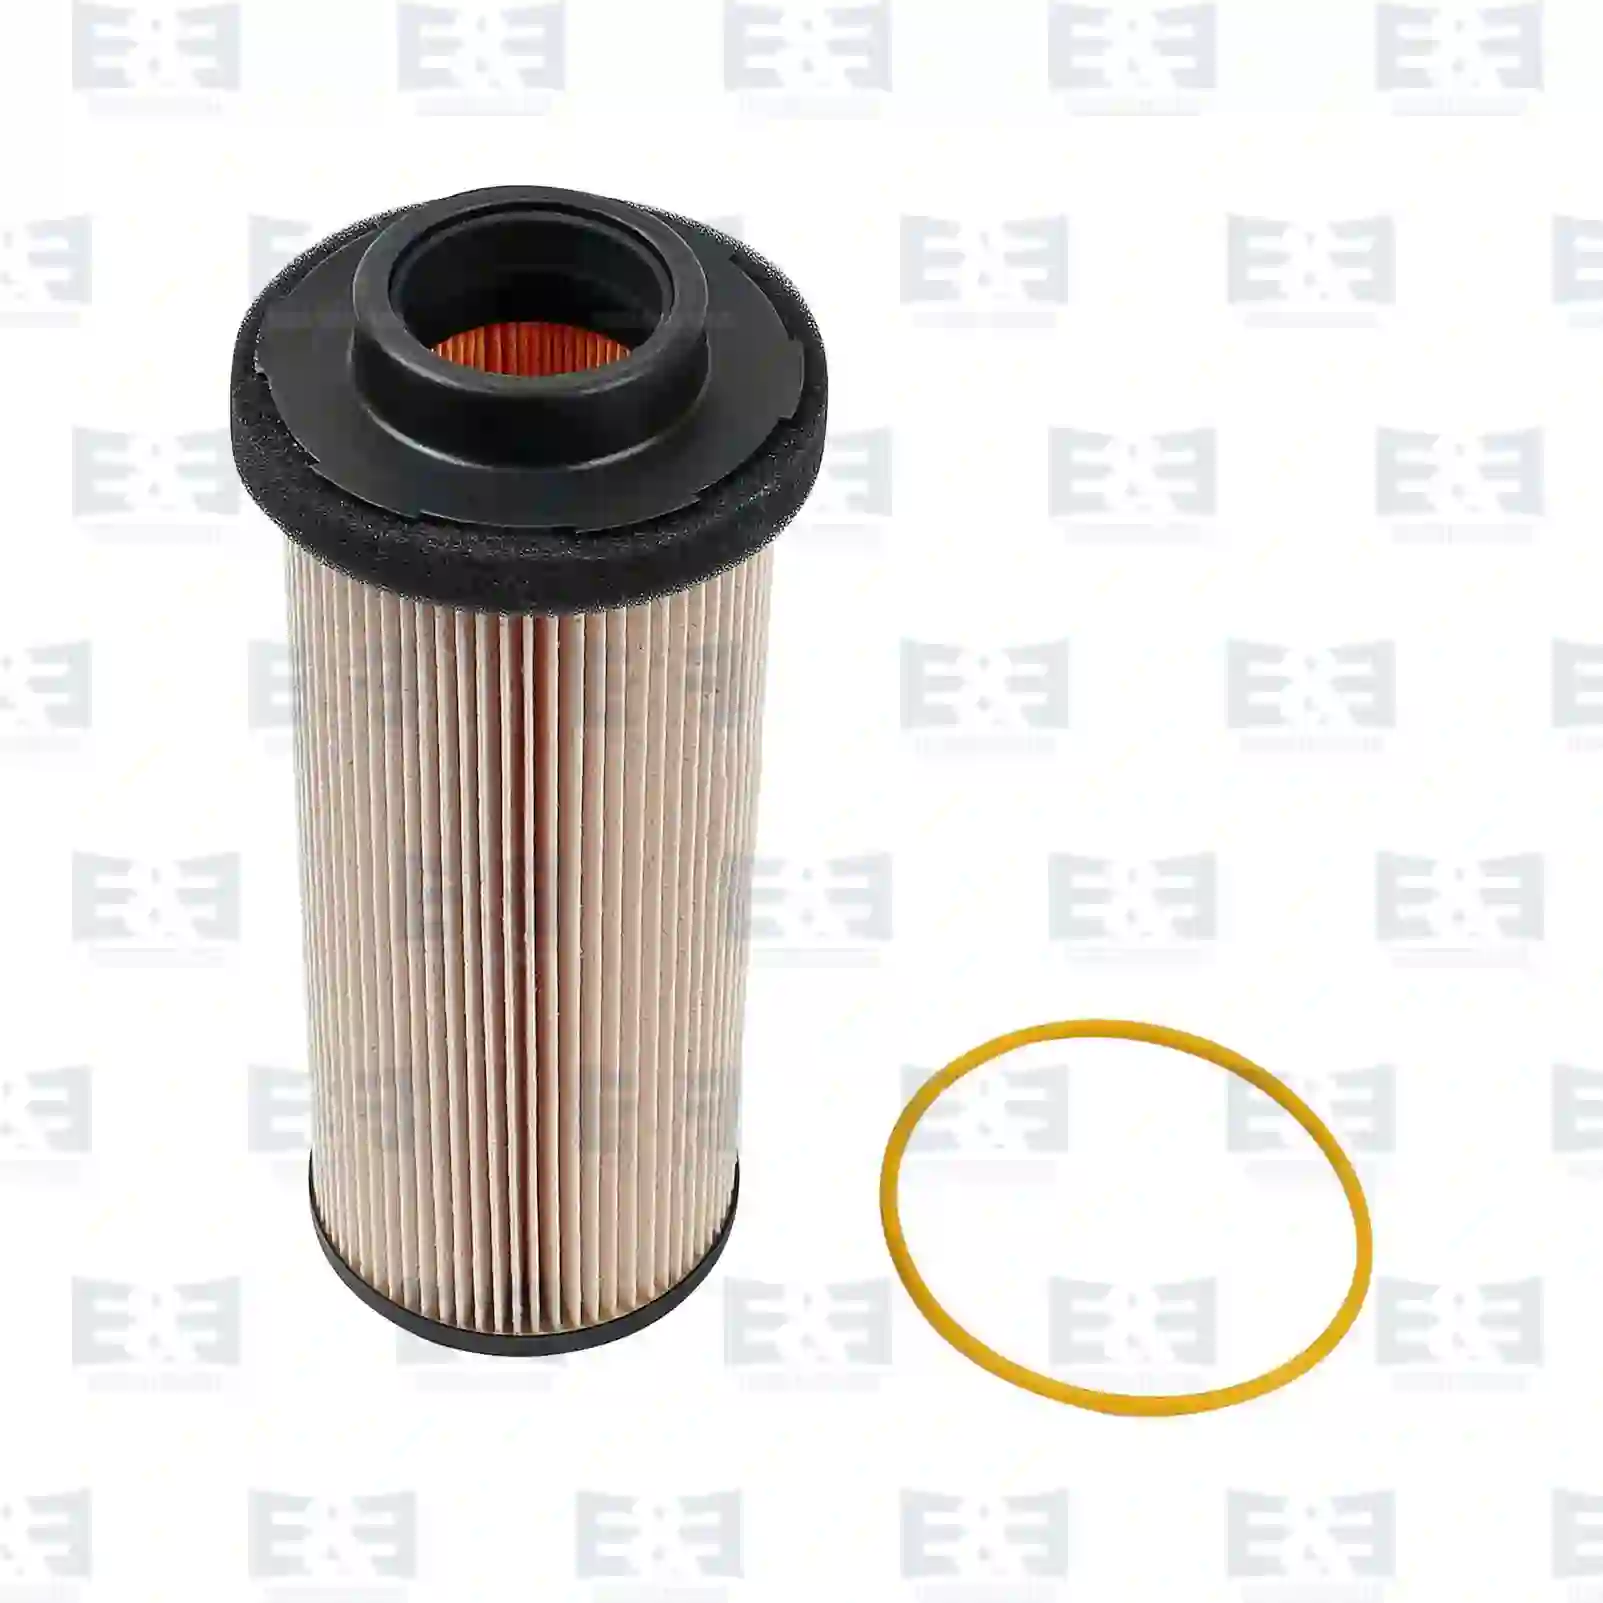 Fuel filter insert, 2E2286949, 1532480, 1537109, 1616361, 1643080, 1699168, 7424993617, 0131506021, 0131506022, 131506021, 1616361, 1699168, 1643080, ZG10186-0008 ||  2E2286949 E&E Truck Spare Parts | Truck Spare Parts, Auotomotive Spare Parts Fuel filter insert, 2E2286949, 1532480, 1537109, 1616361, 1643080, 1699168, 7424993617, 0131506021, 0131506022, 131506021, 1616361, 1699168, 1643080, ZG10186-0008 ||  2E2286949 E&E Truck Spare Parts | Truck Spare Parts, Auotomotive Spare Parts